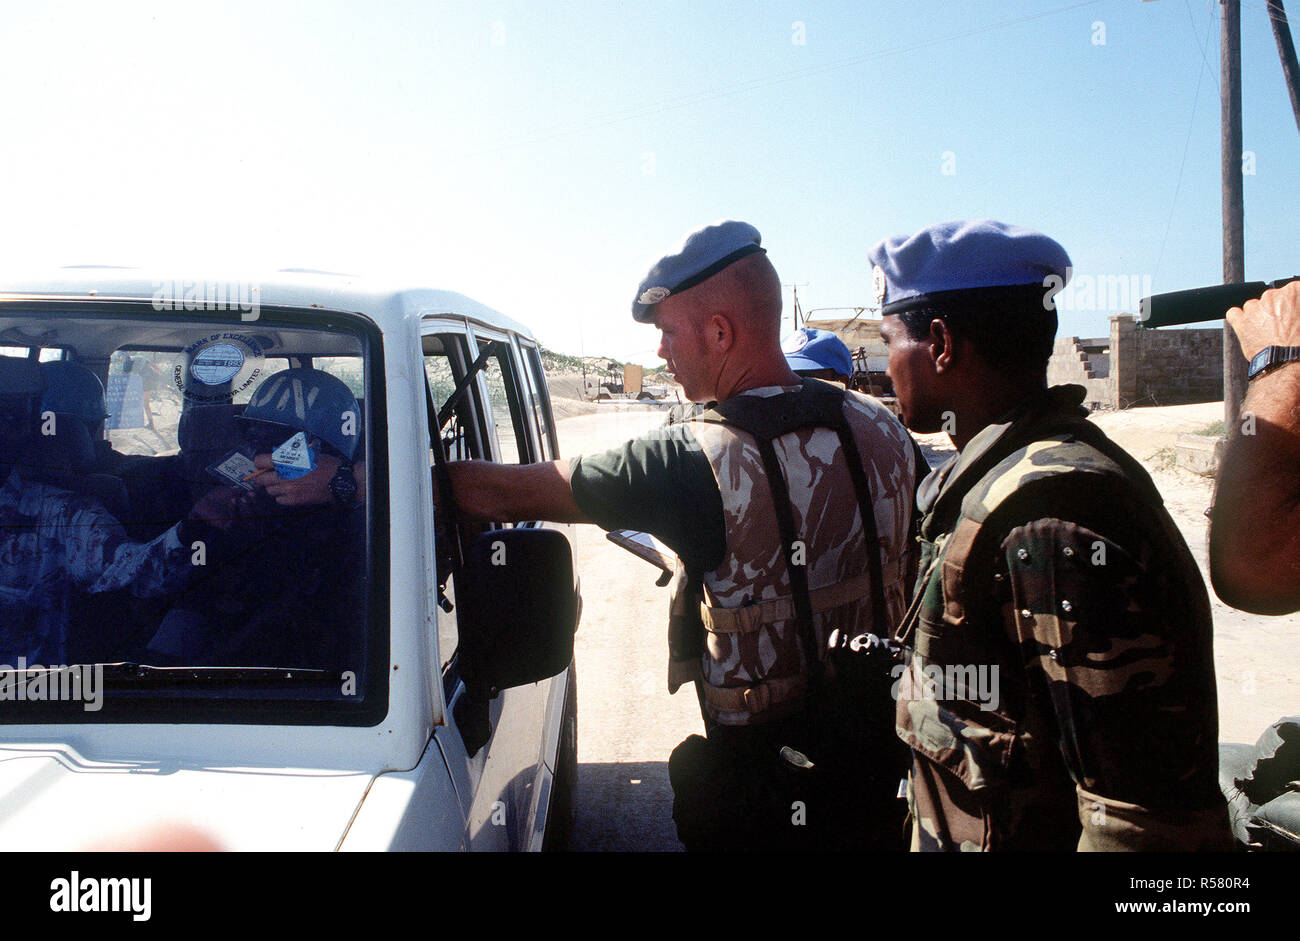 Un soldat Belge effectue un contrôle de sécurité sur un véhicule qui tentent d'entrer dans l'enceinte à Kismayo. Le contingent belge fait partie des forces des Nations Unies en Somalie dans le cadre de l'opération continuent d'espoir. Banque D'Images